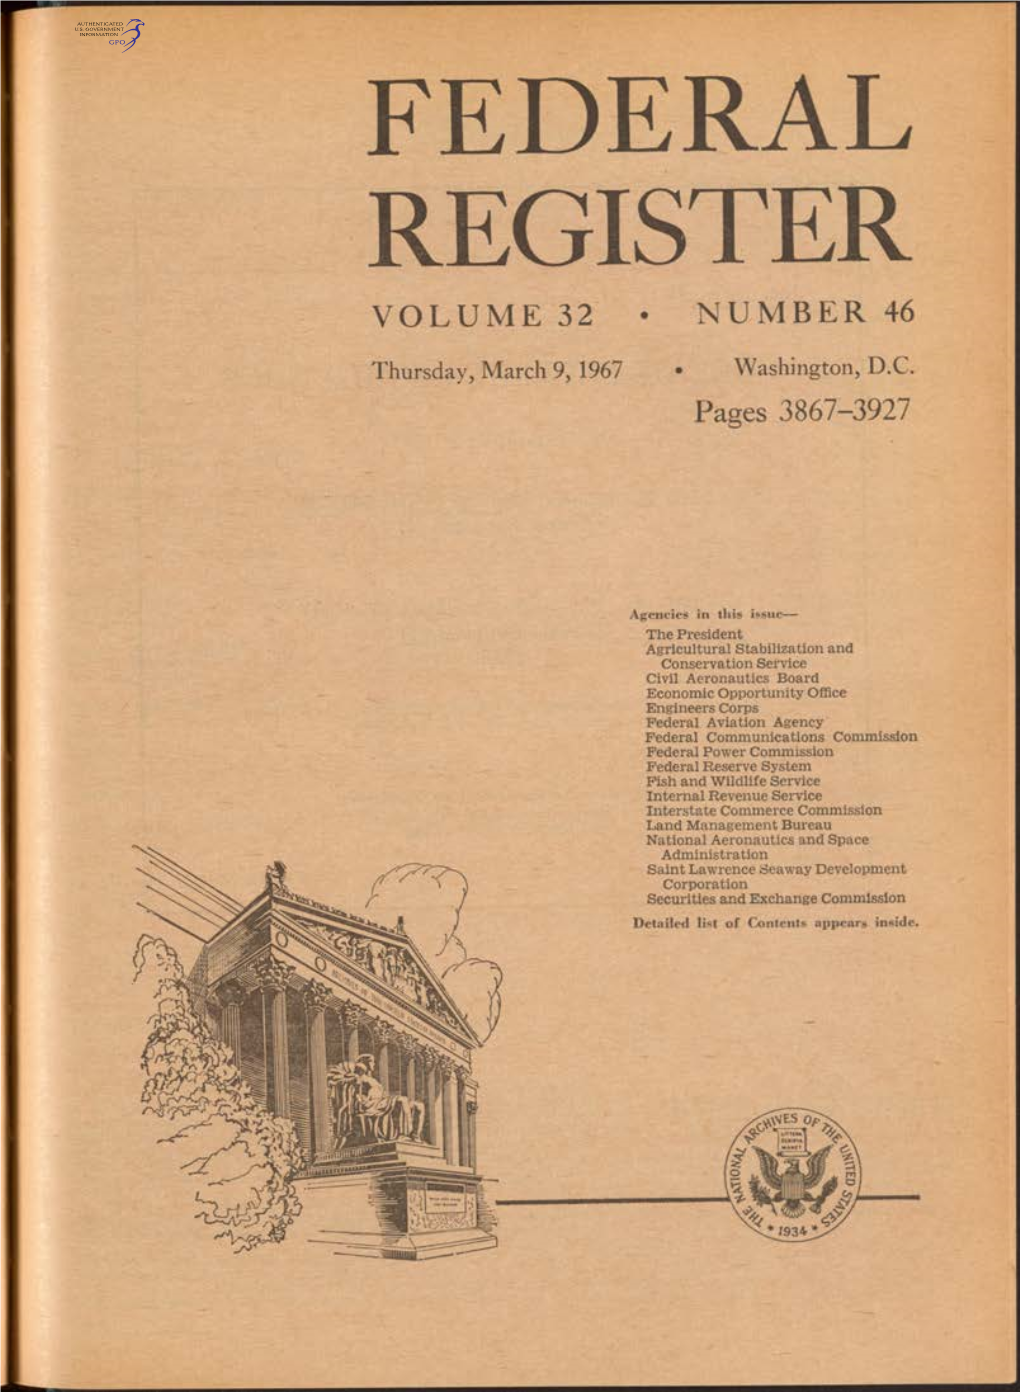 Federal Register Volume 32 • Number 46